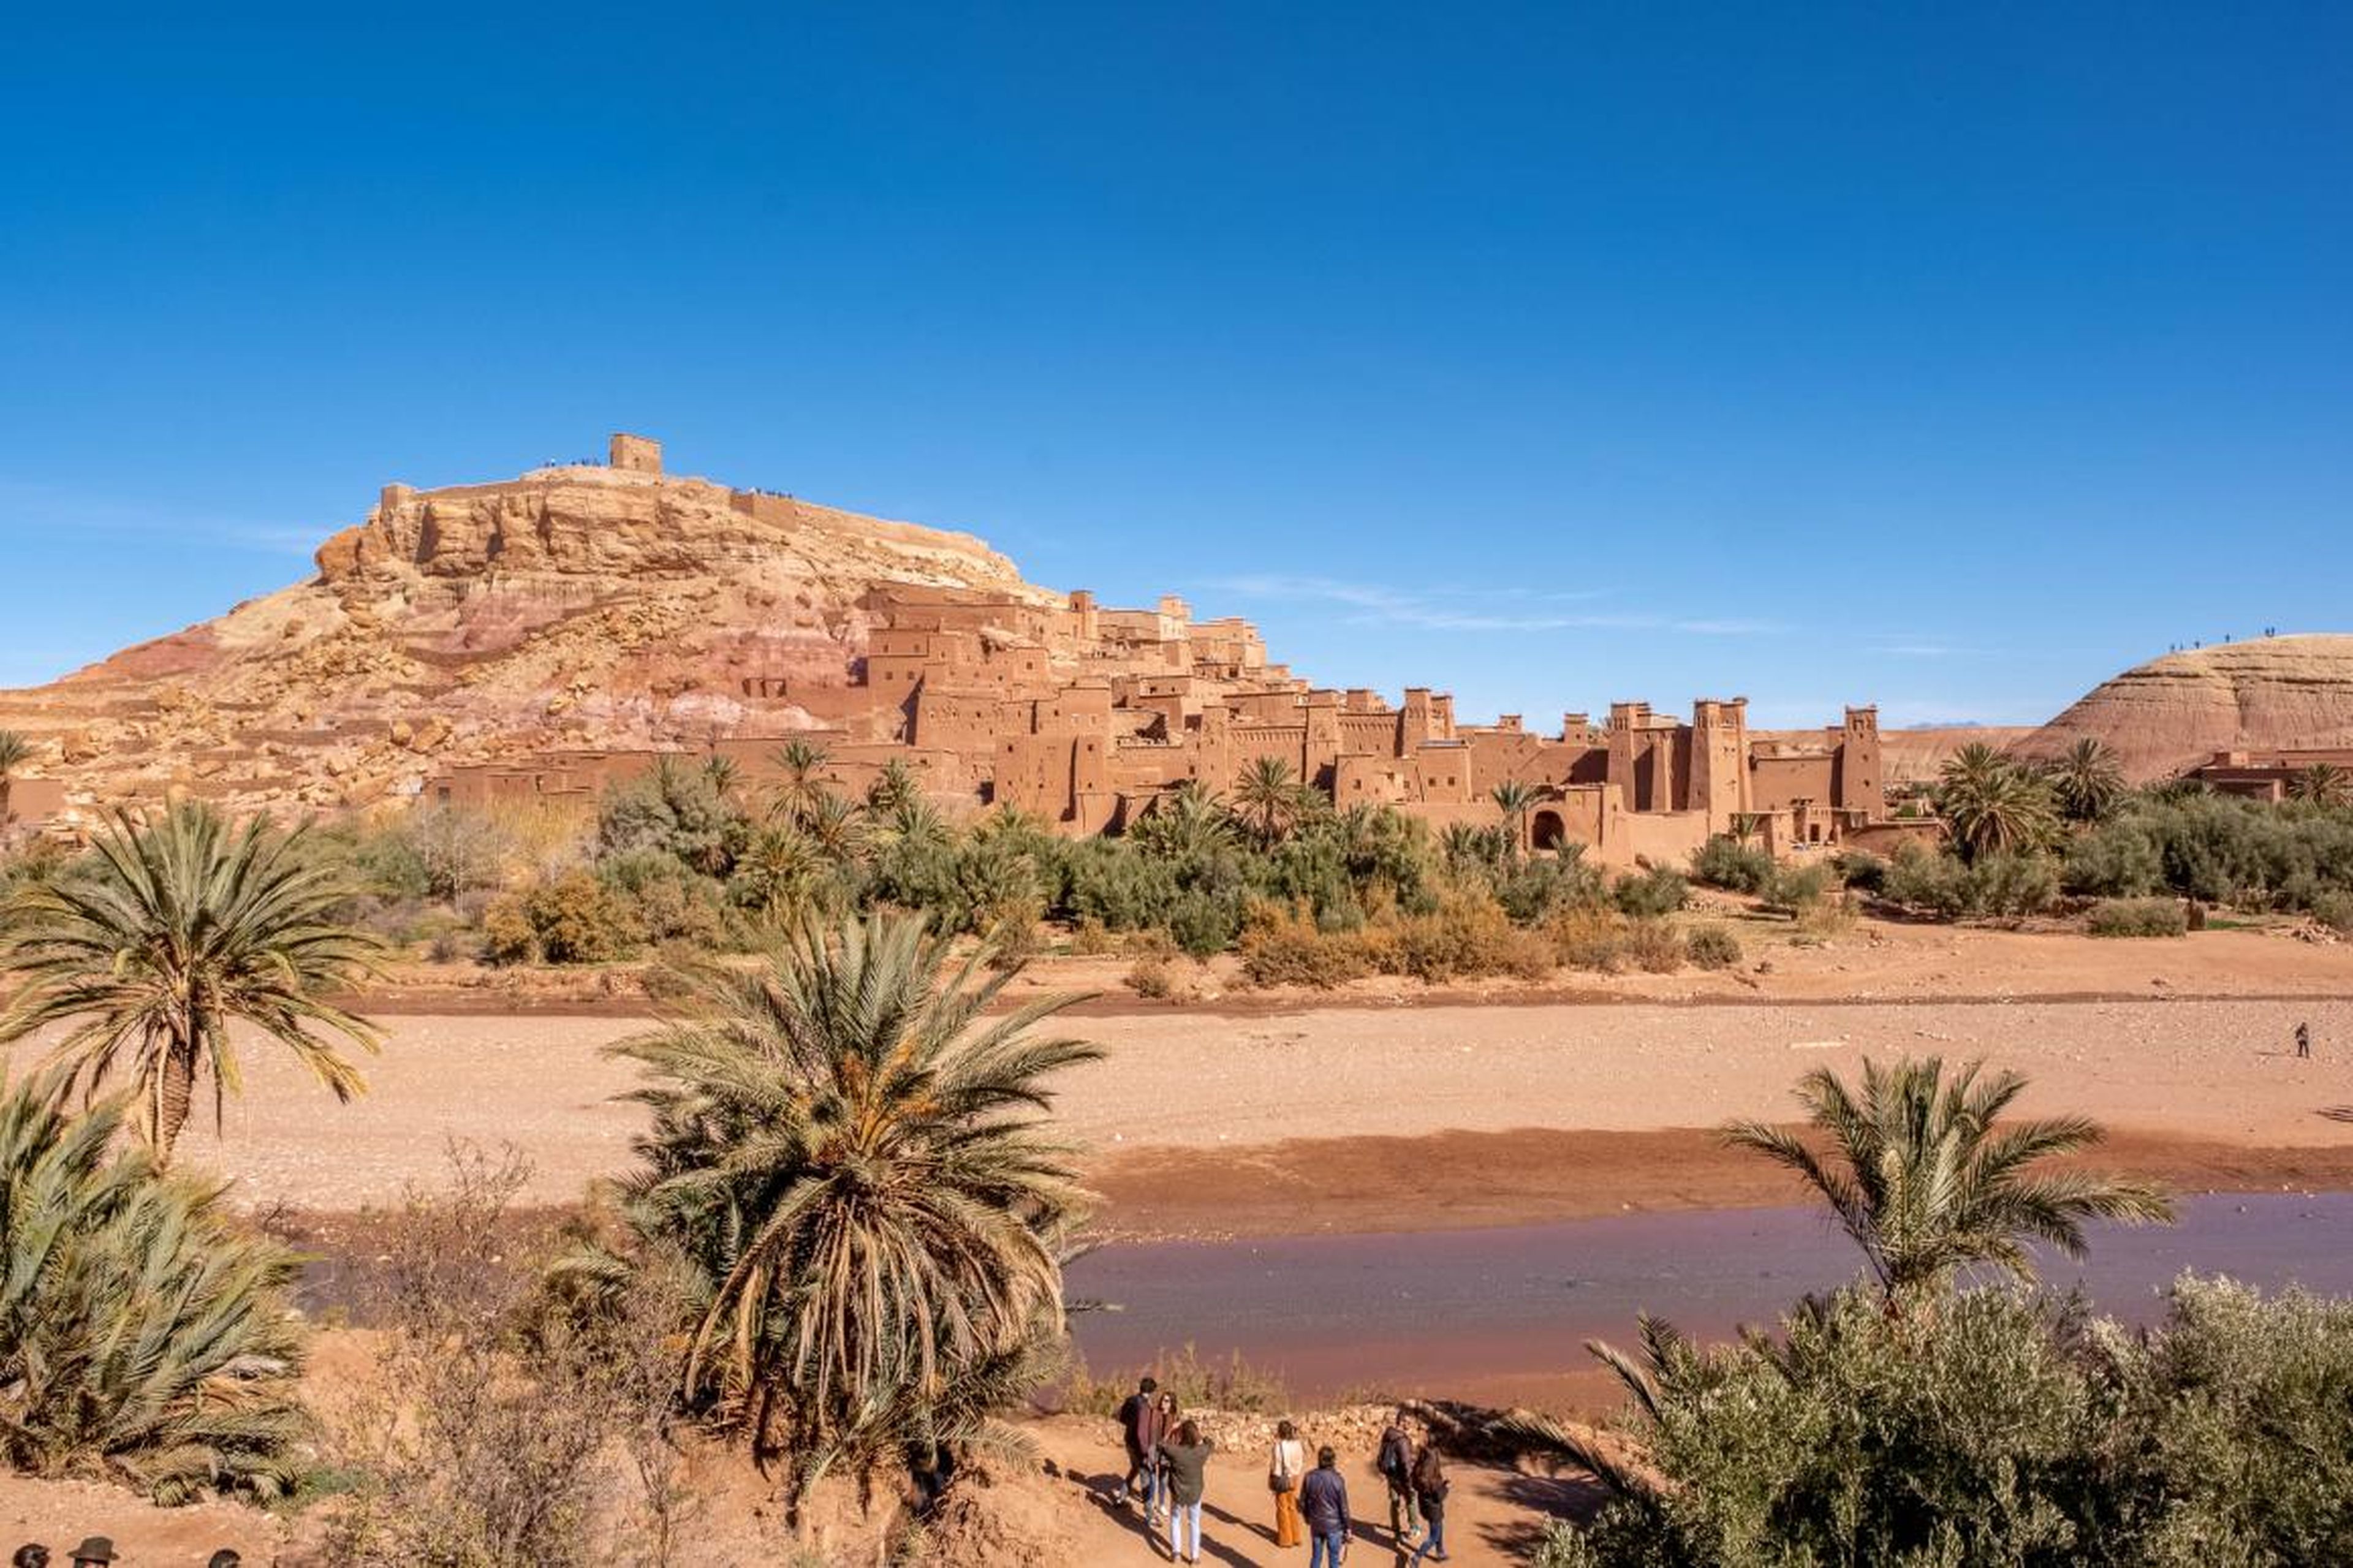 [RE] En un reciente viaje por carretera de Marrakech a Fez, decidí hacer una parada en Ait Ben Hadu para echar un vistazo.